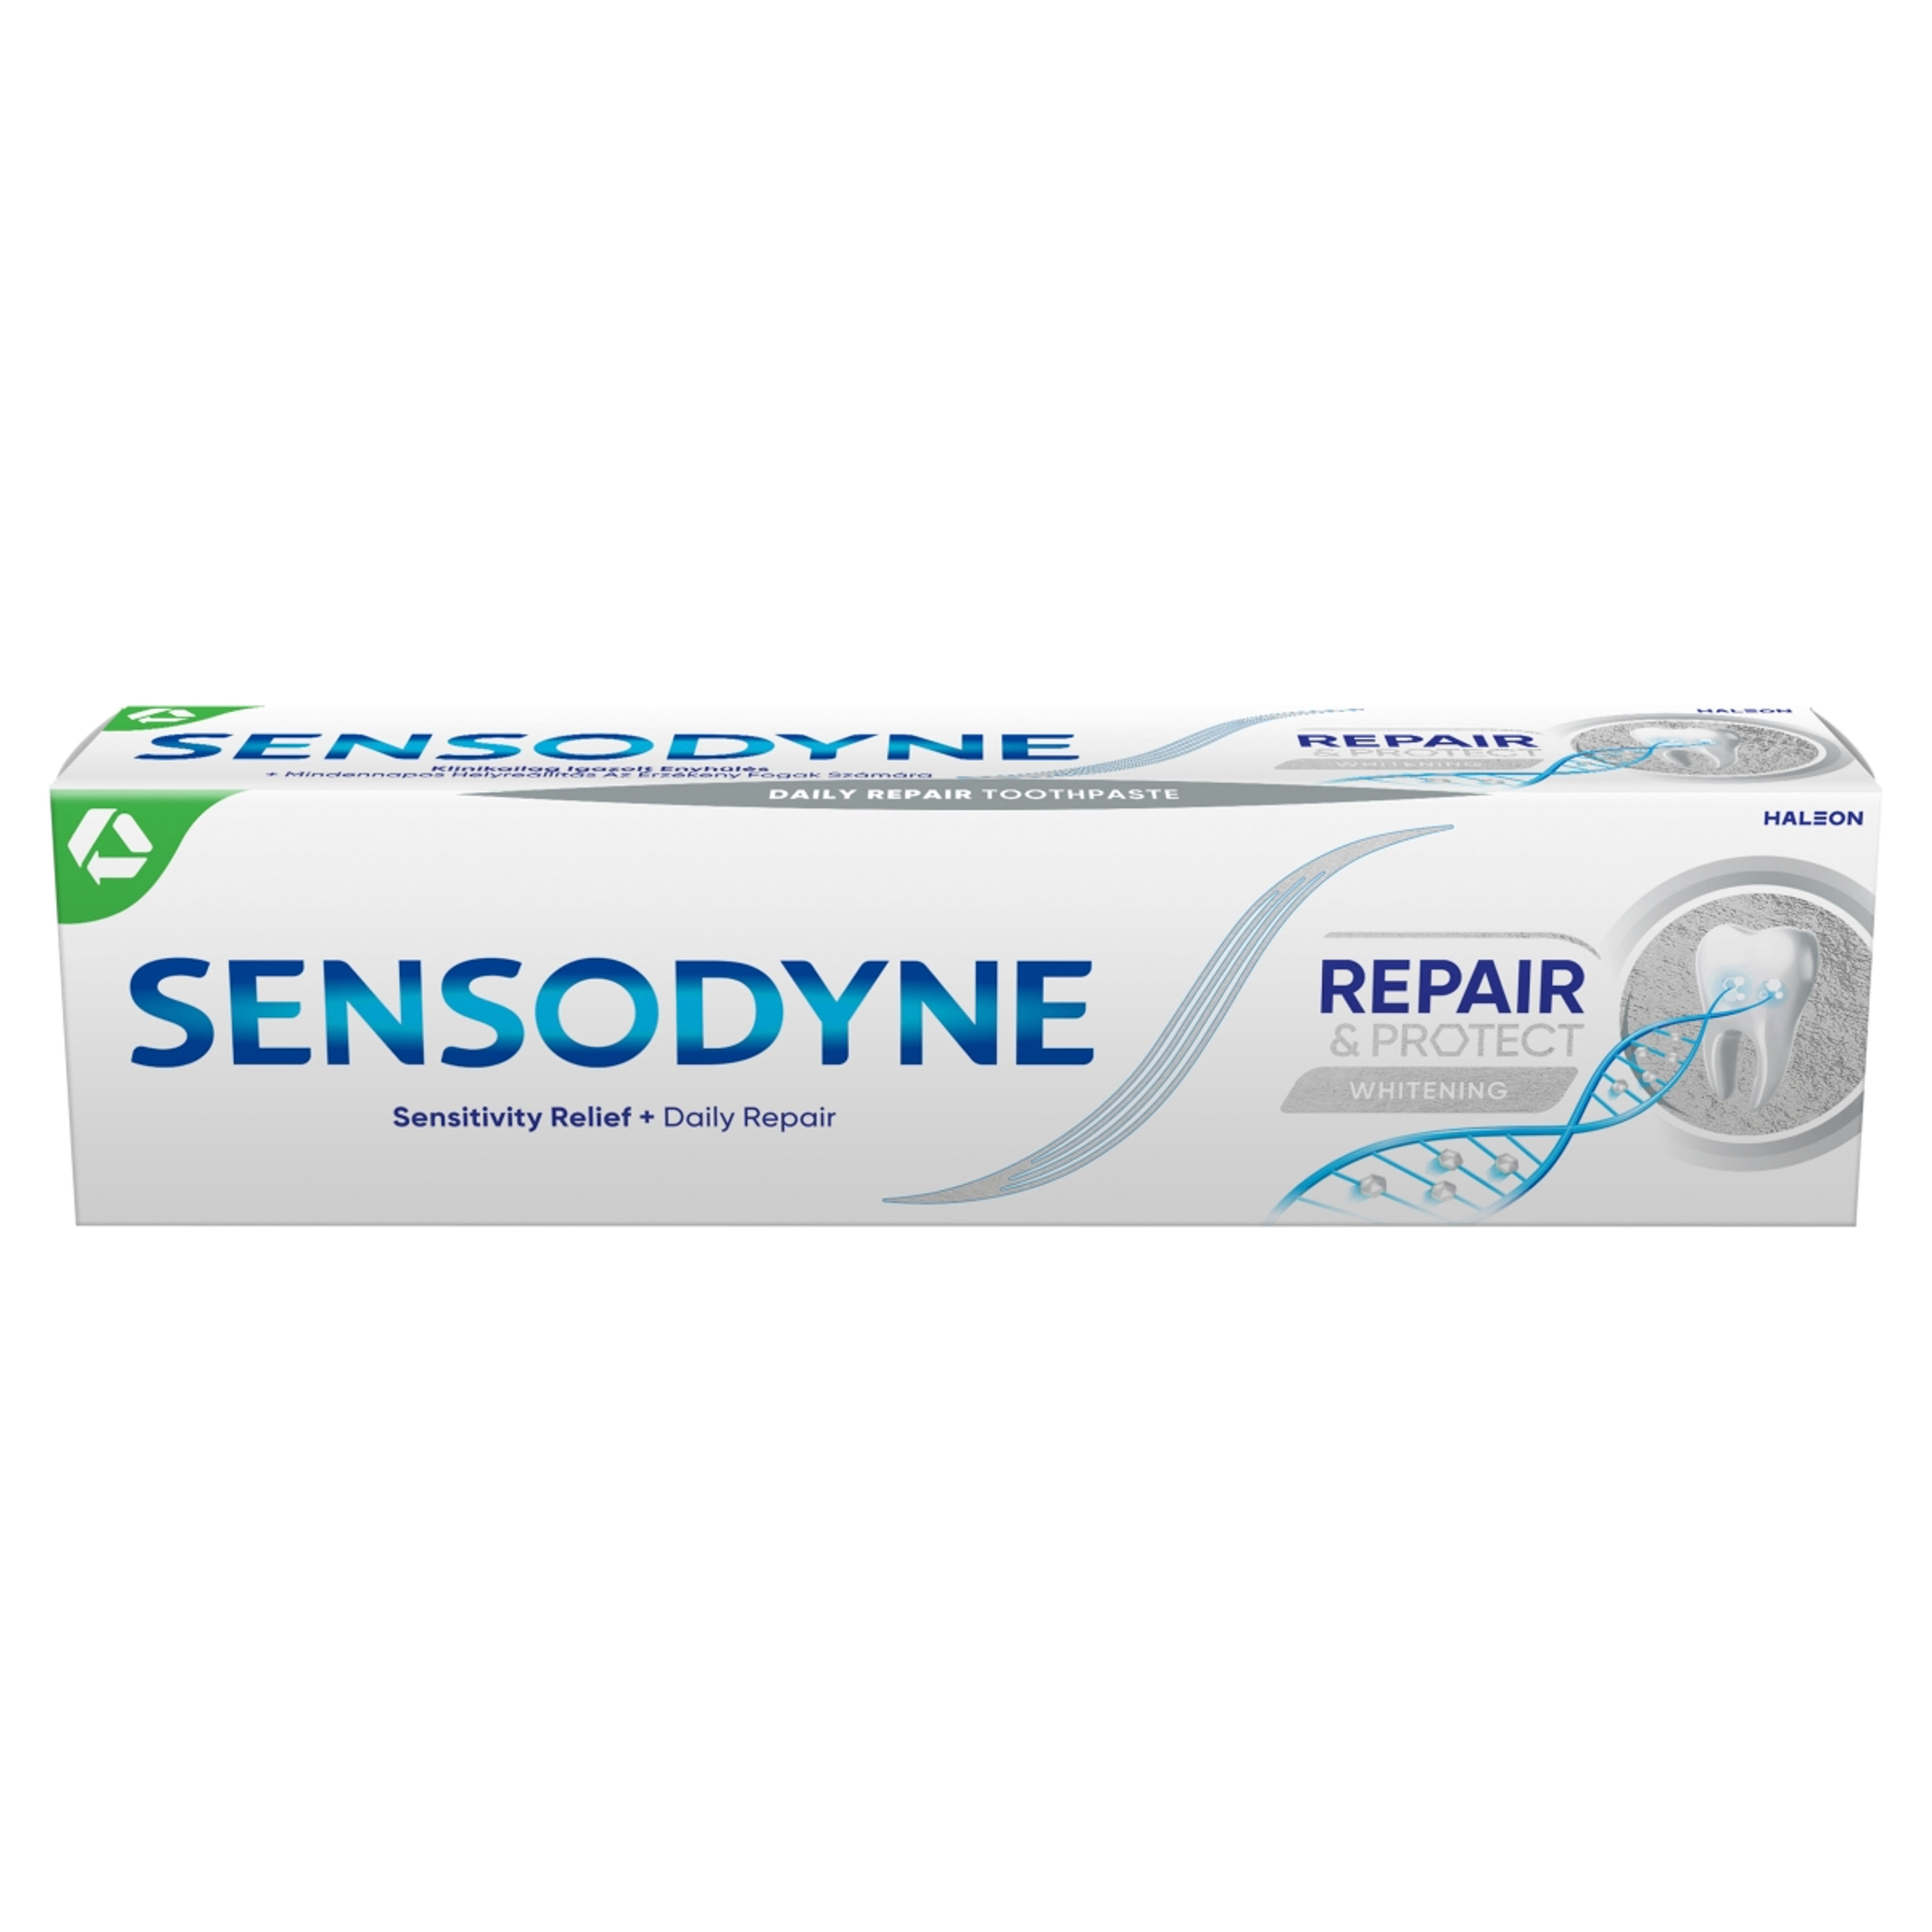 Sensodyne Repair & Protect Whitening fogkrém - 75 ml-2